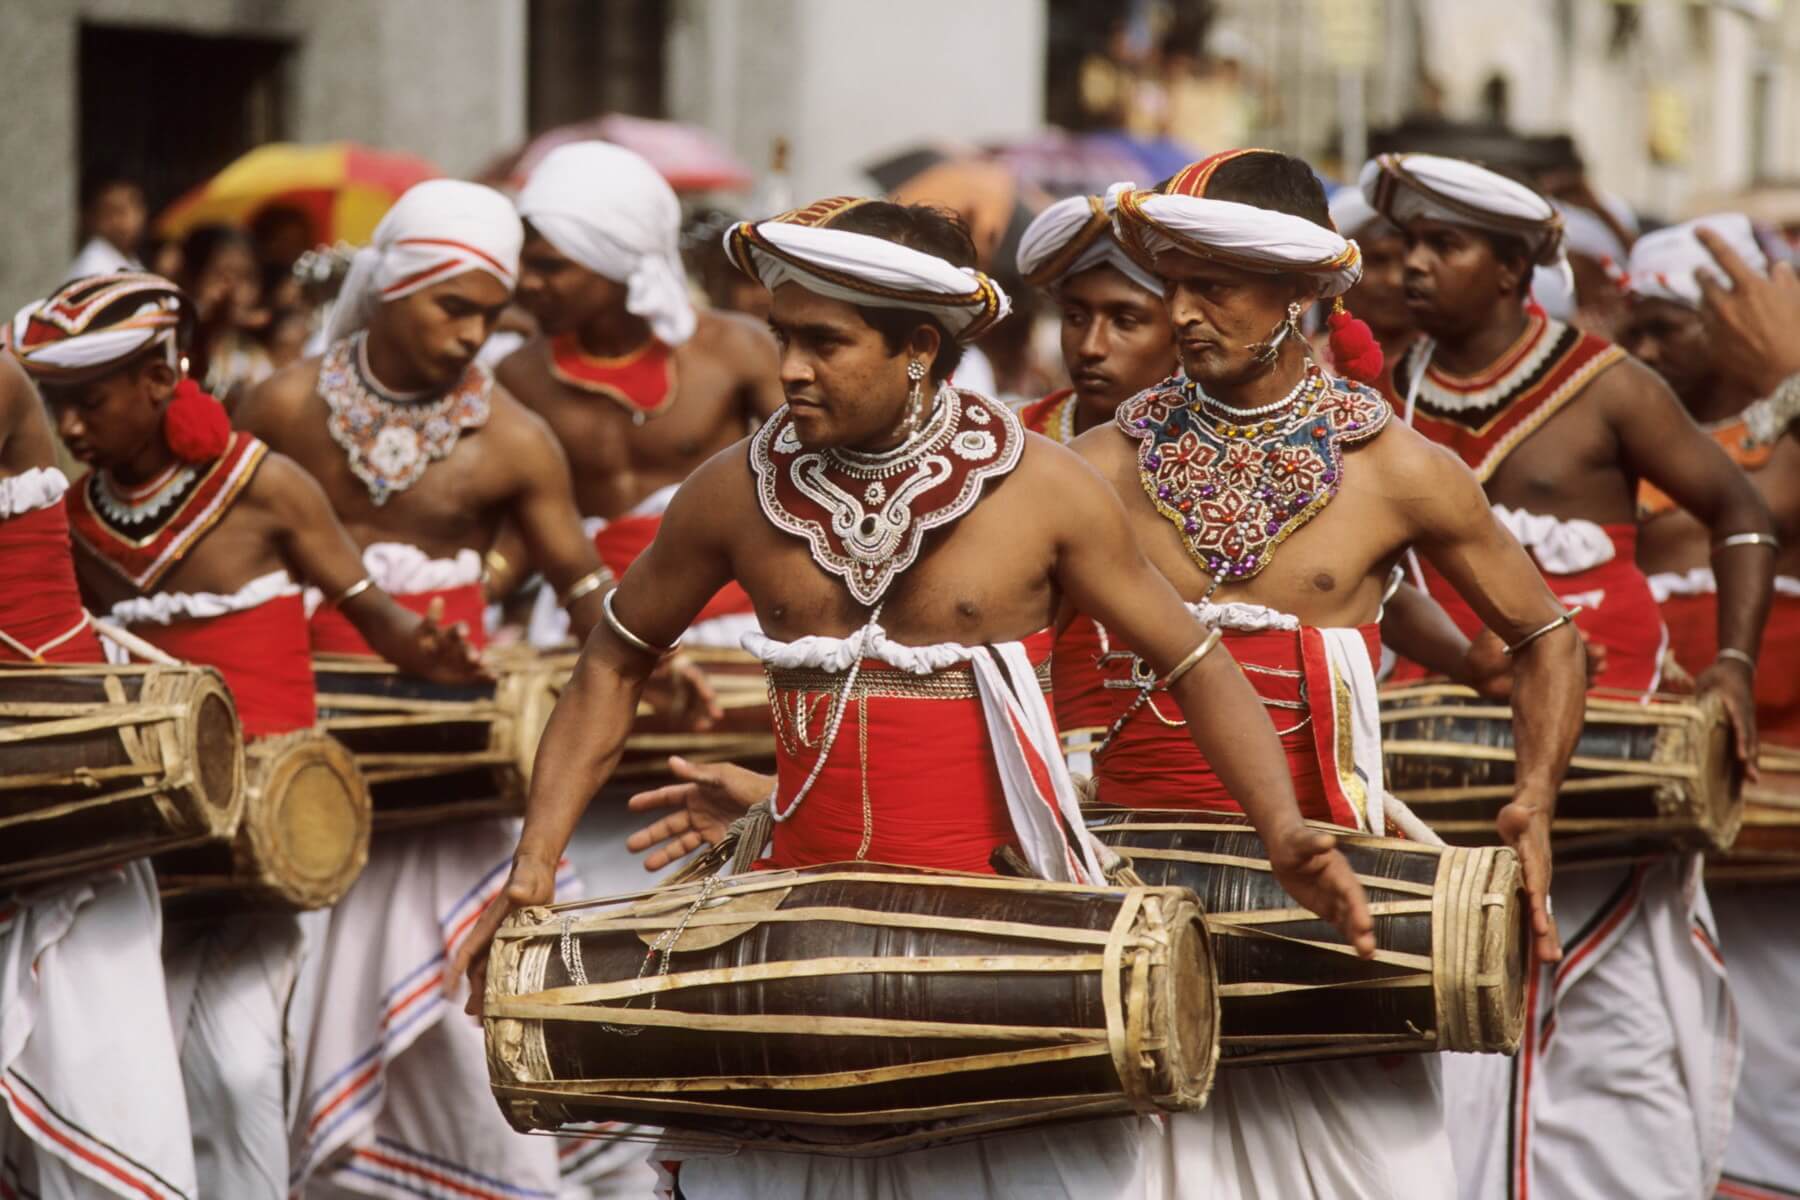 Kandy-Esala-Perahera gehört zu den großartigsten Festen in ganz Südost-Asien und ist bekannt für farbenprächtige und prunkvolle Festprozessionen.